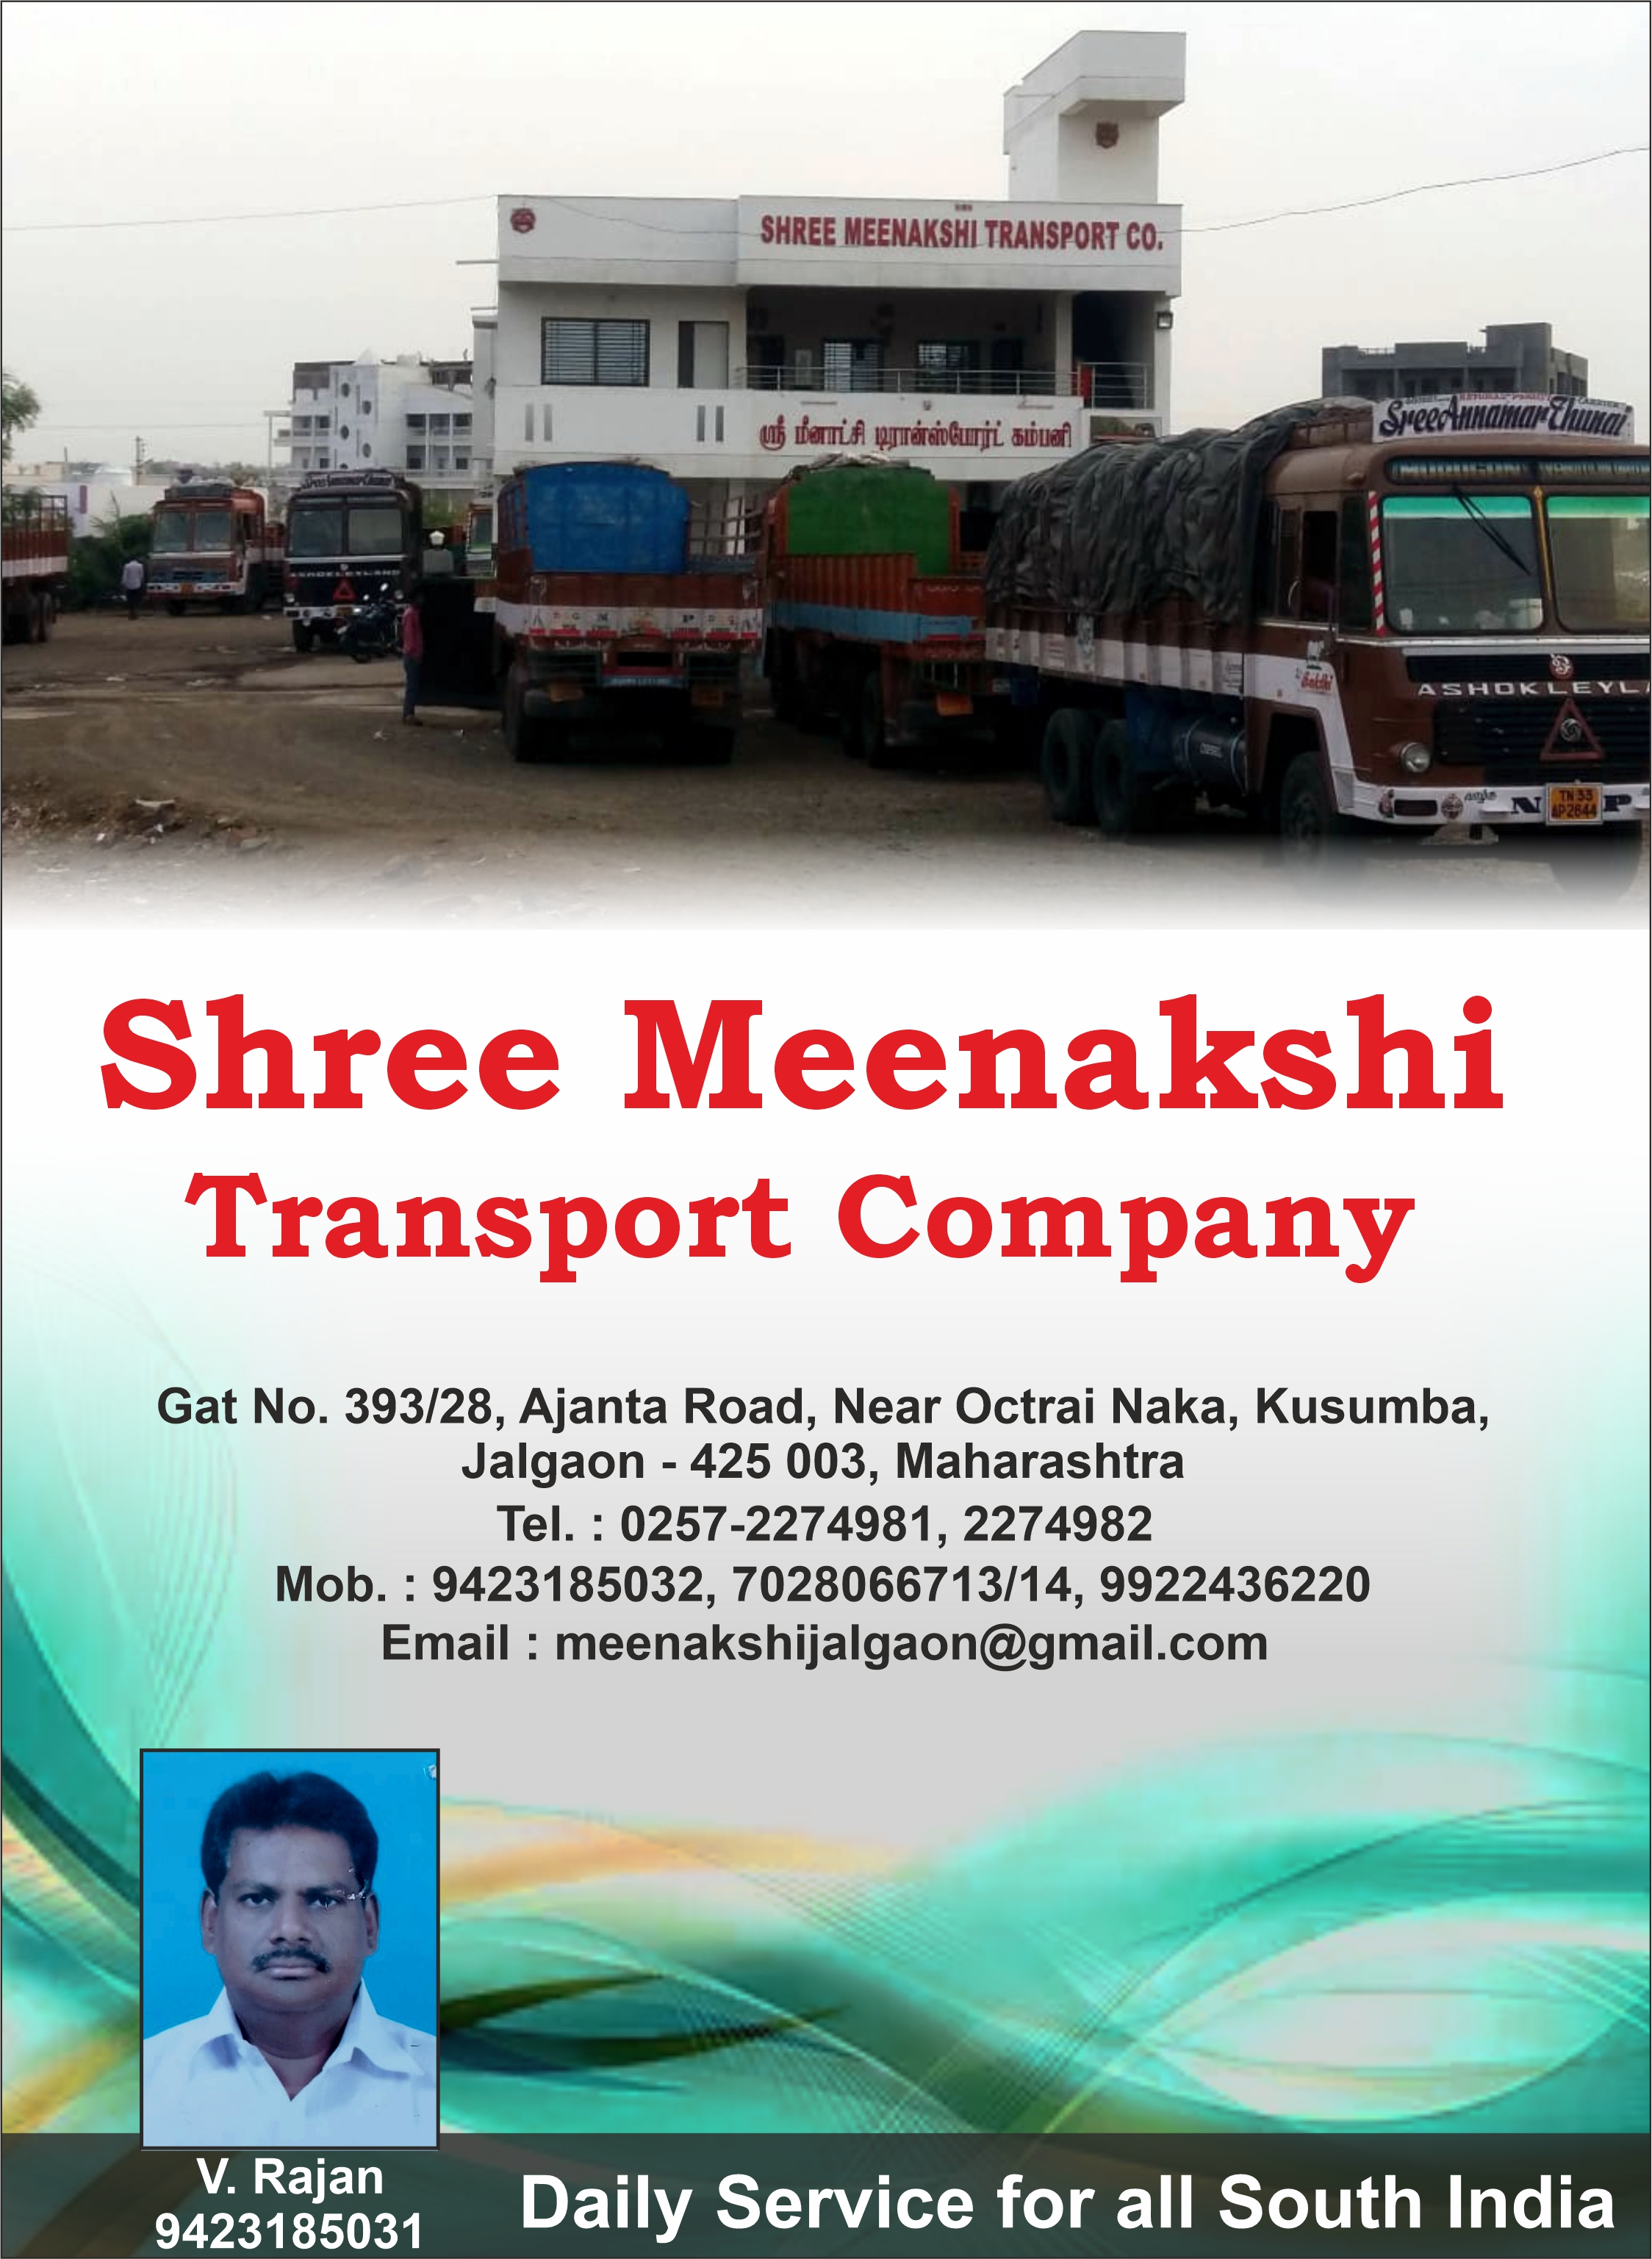 Shree Meenakshi Transport Company